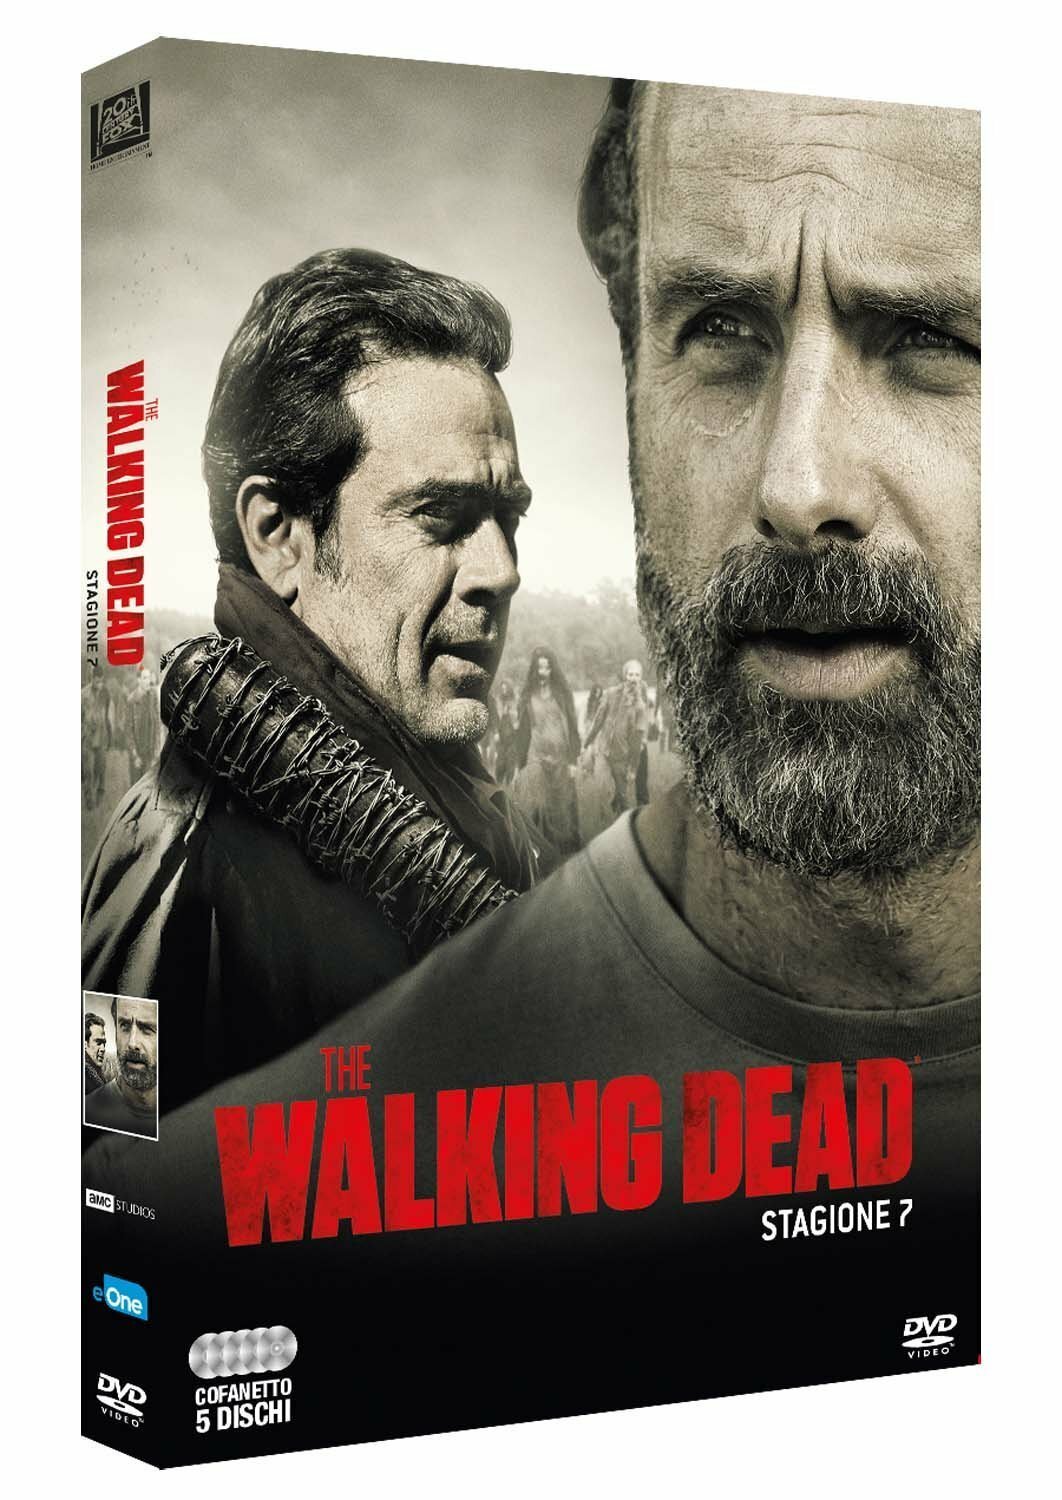 The Walking Dead 7, DVD